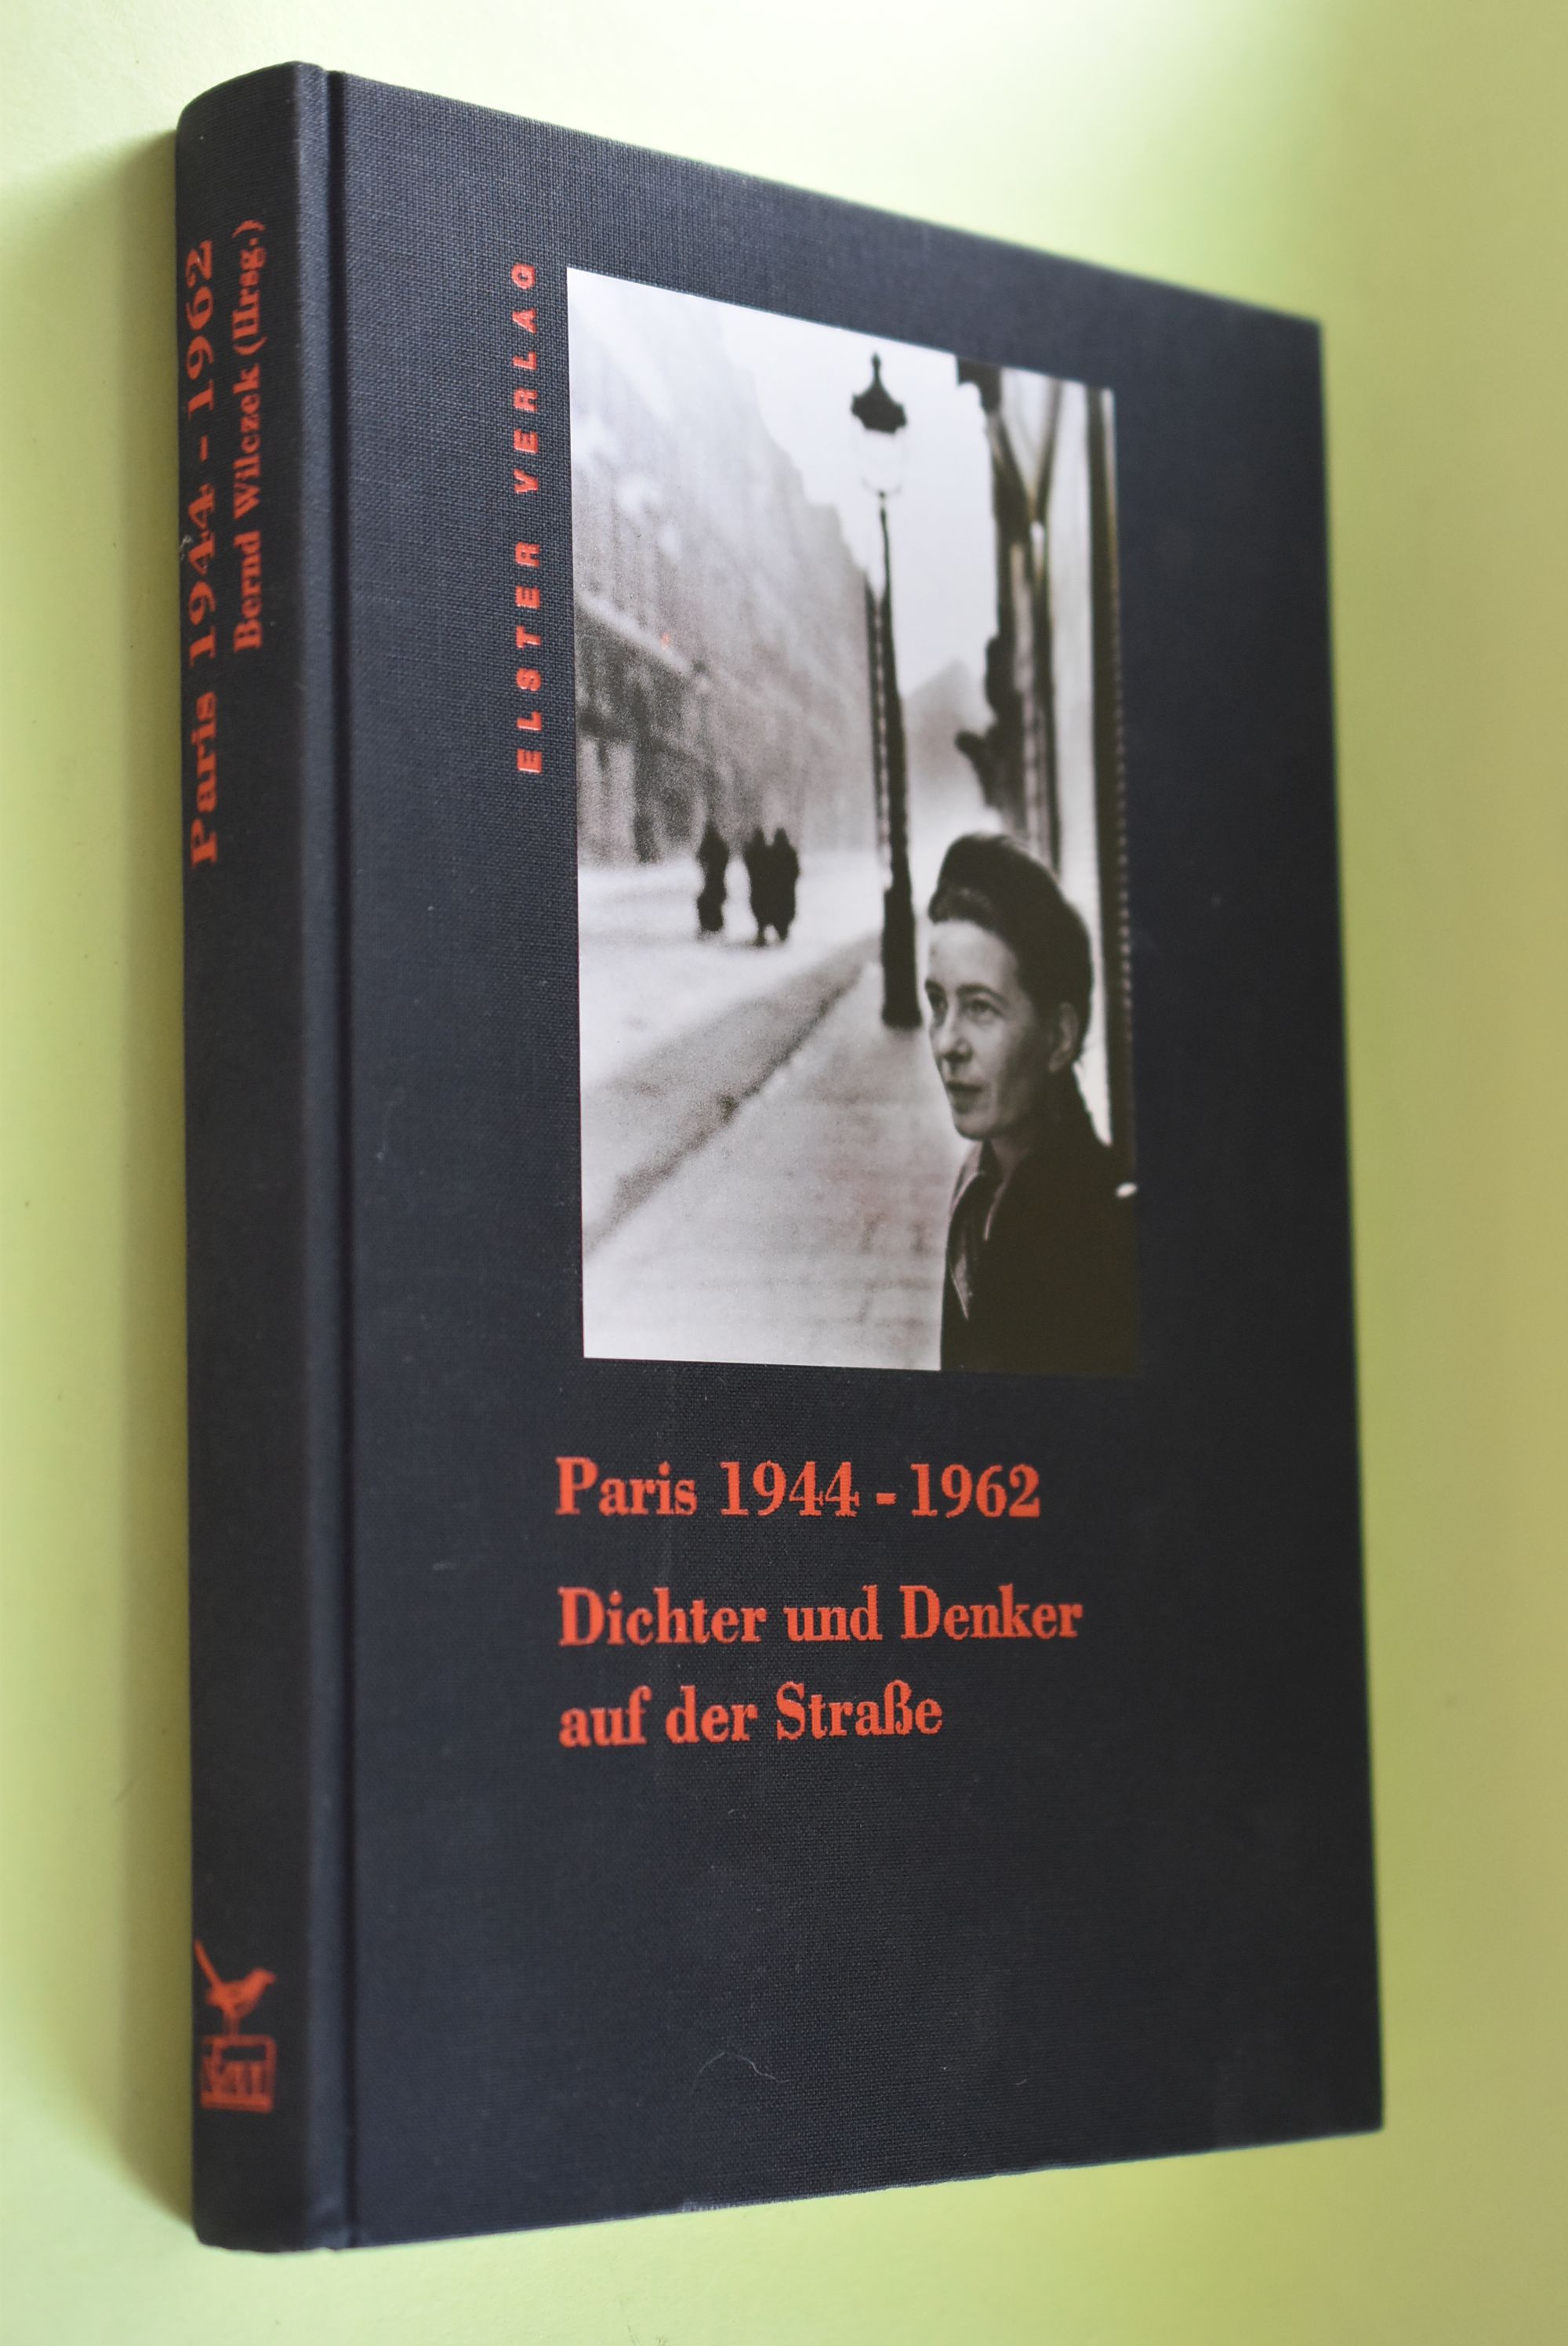 Paris 1944 - 1962 : Dichter und Denker auf der Strasse. hrsg. von Bernd Wilczek. Die franz. Beitr. wurden von Anna Bernard und Bernd Wilczek übers. - Wilczek, Bernd (Herausgeber)